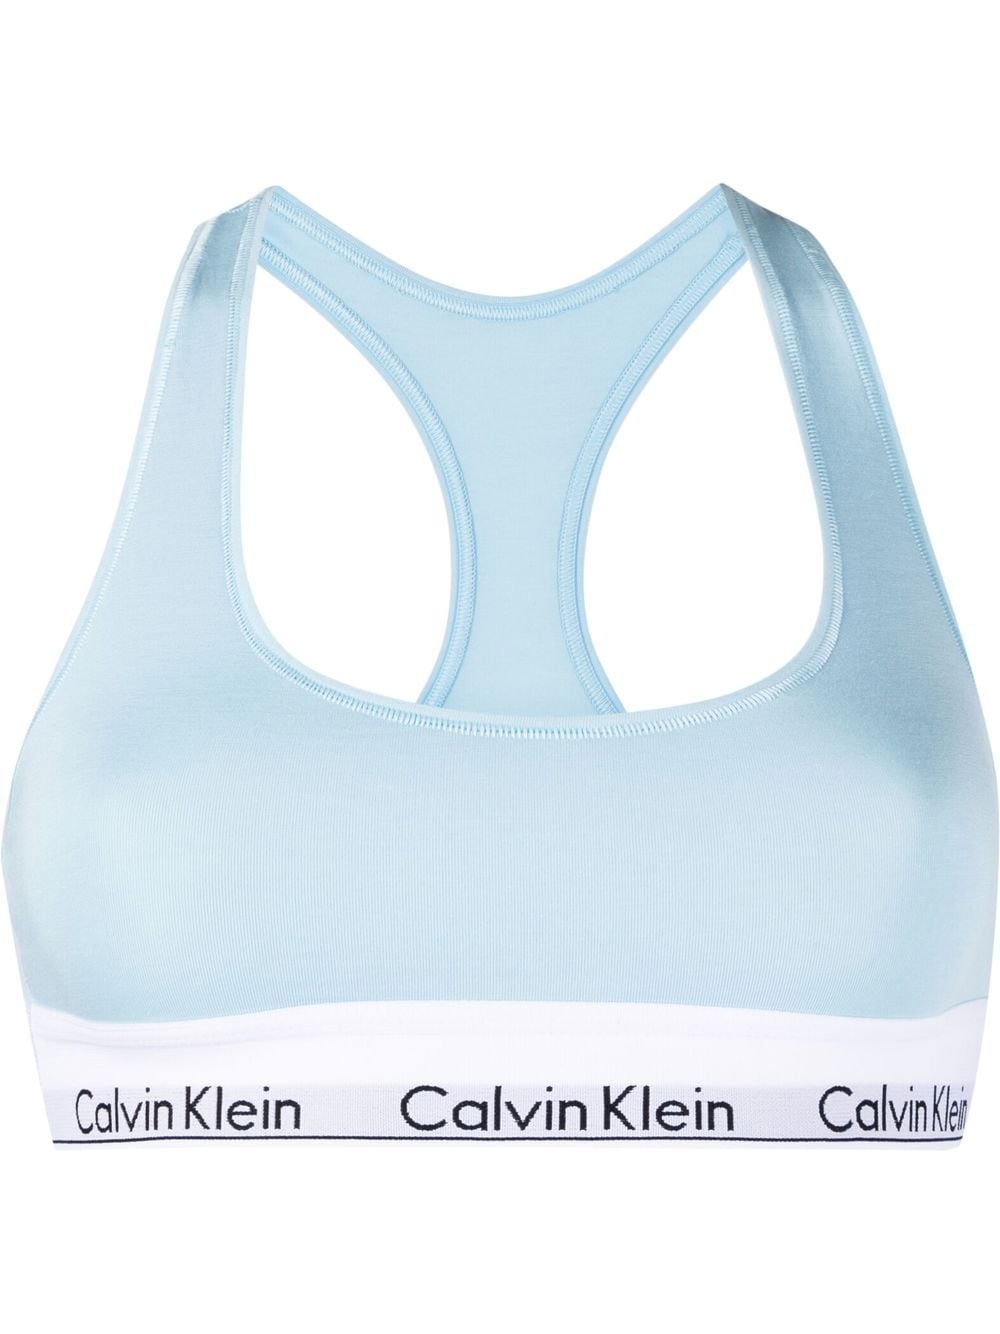 Blue Calvin Klein CK Sports Bra